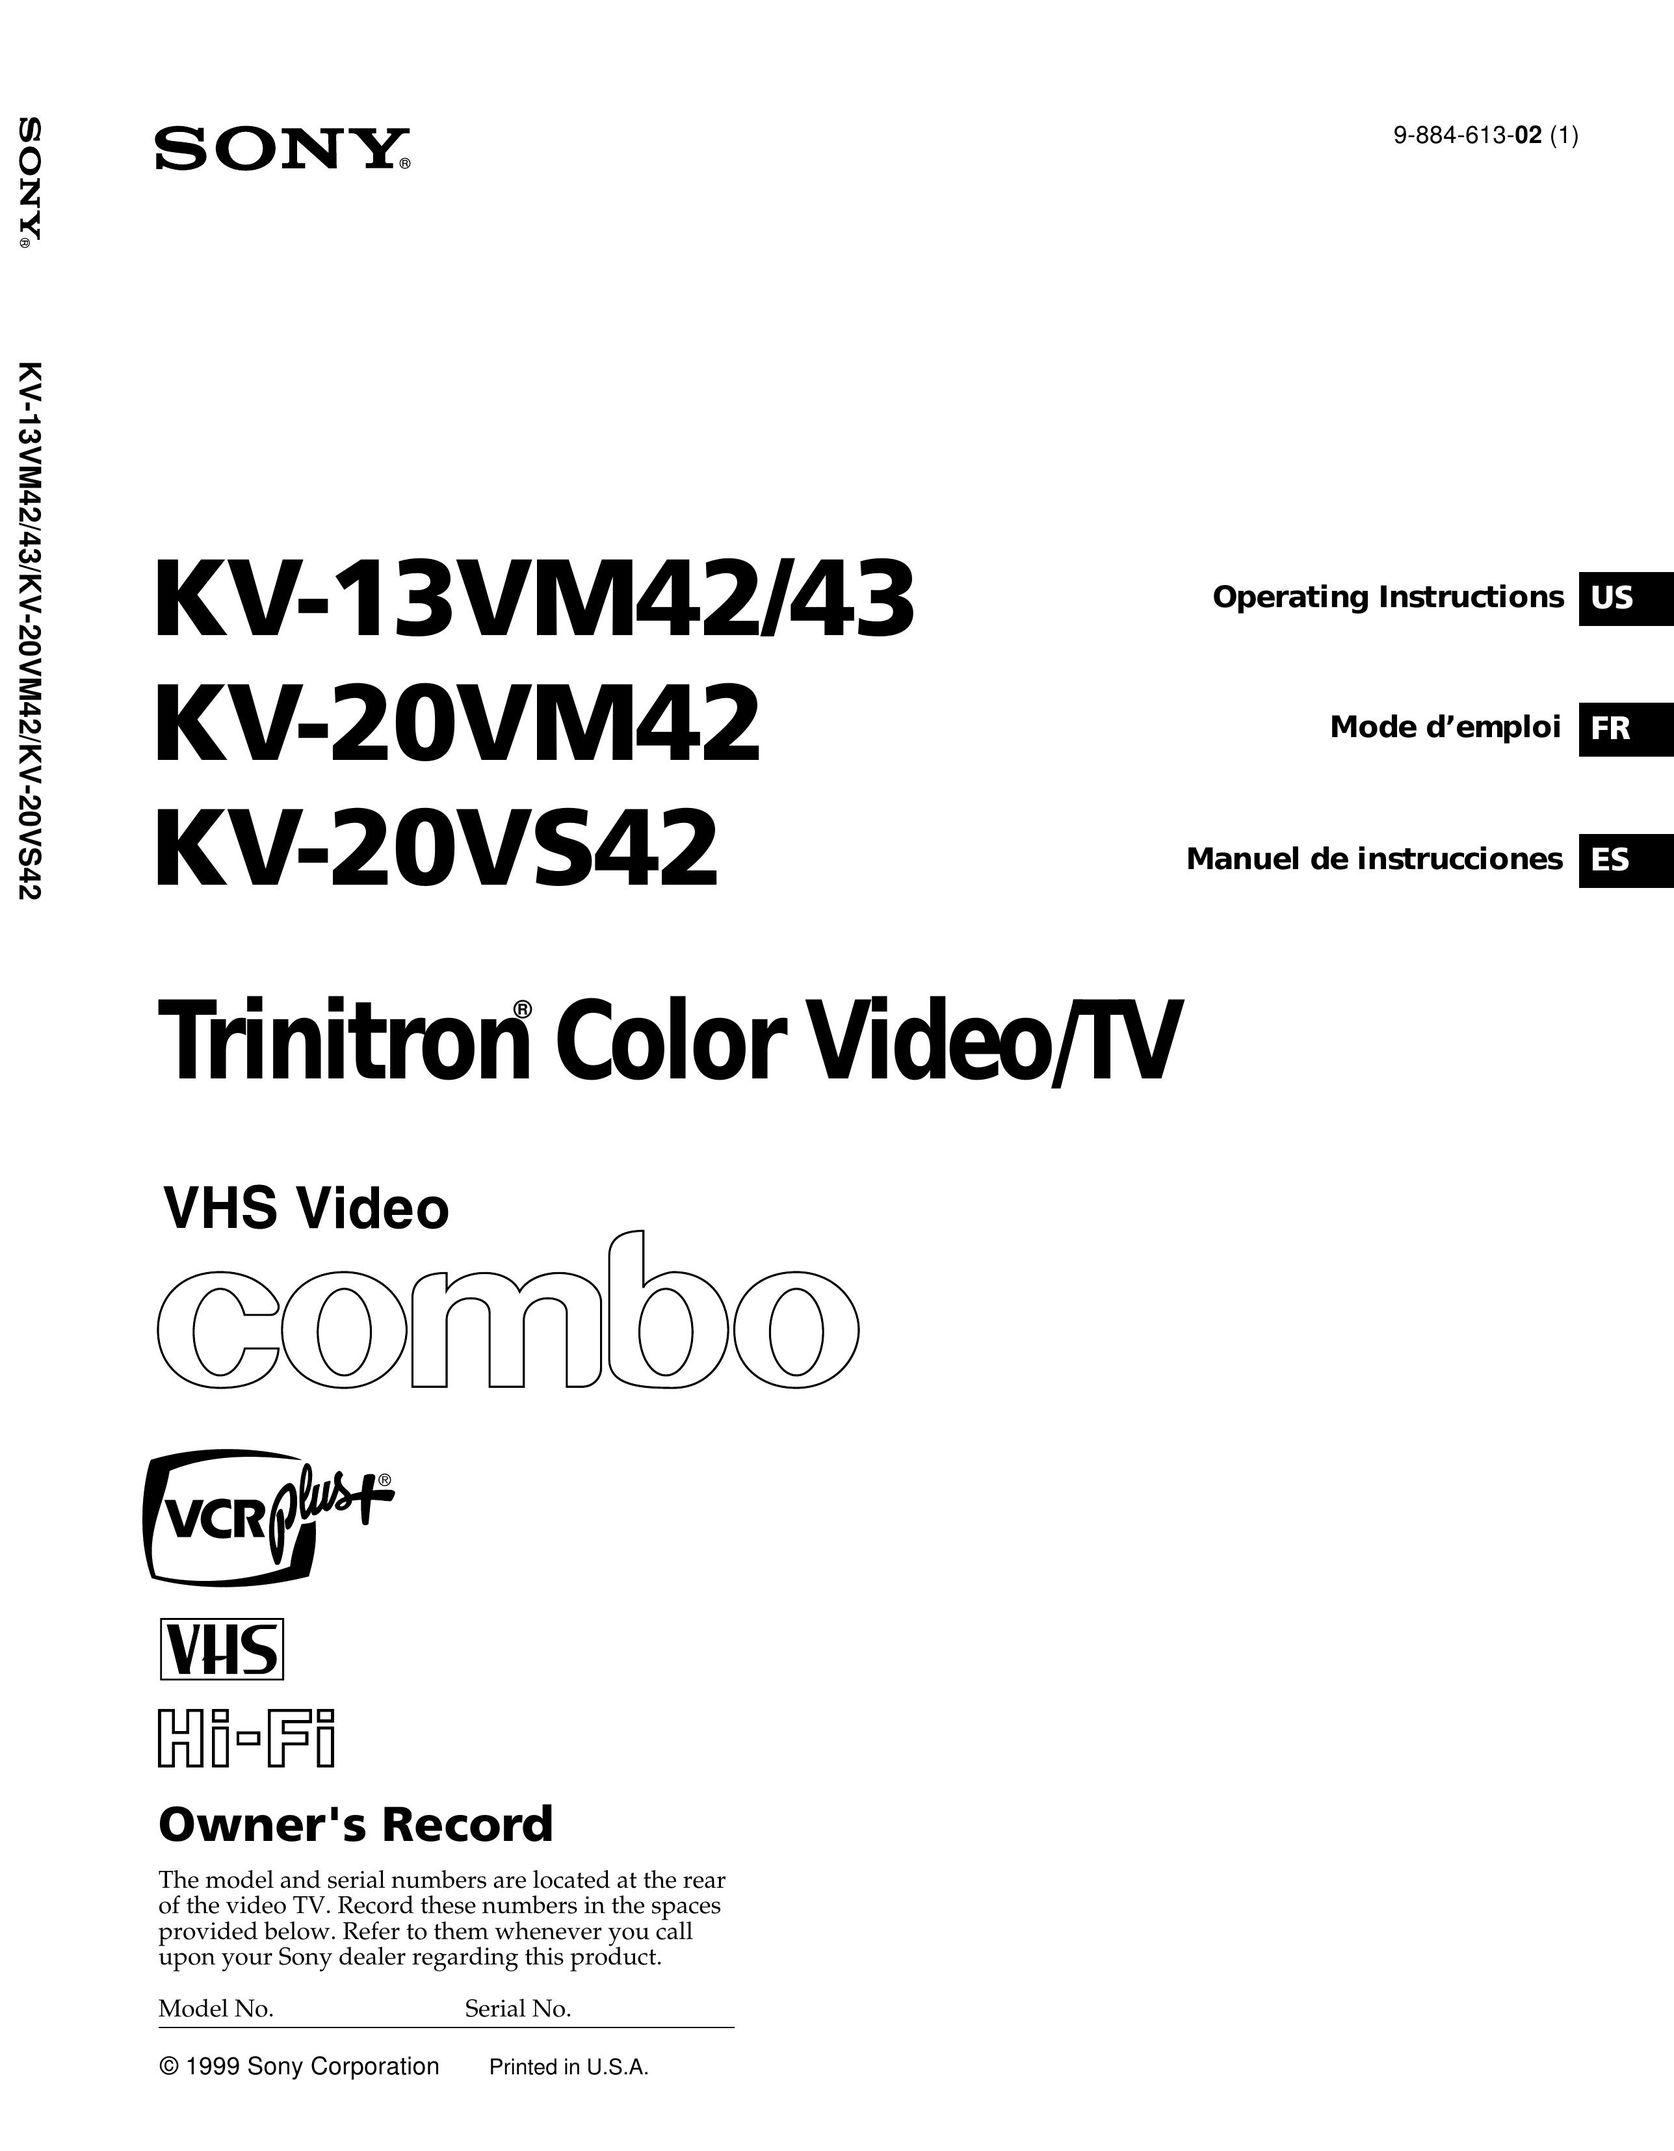 Sony KV 20VS42 TV VCR Combo User Manual